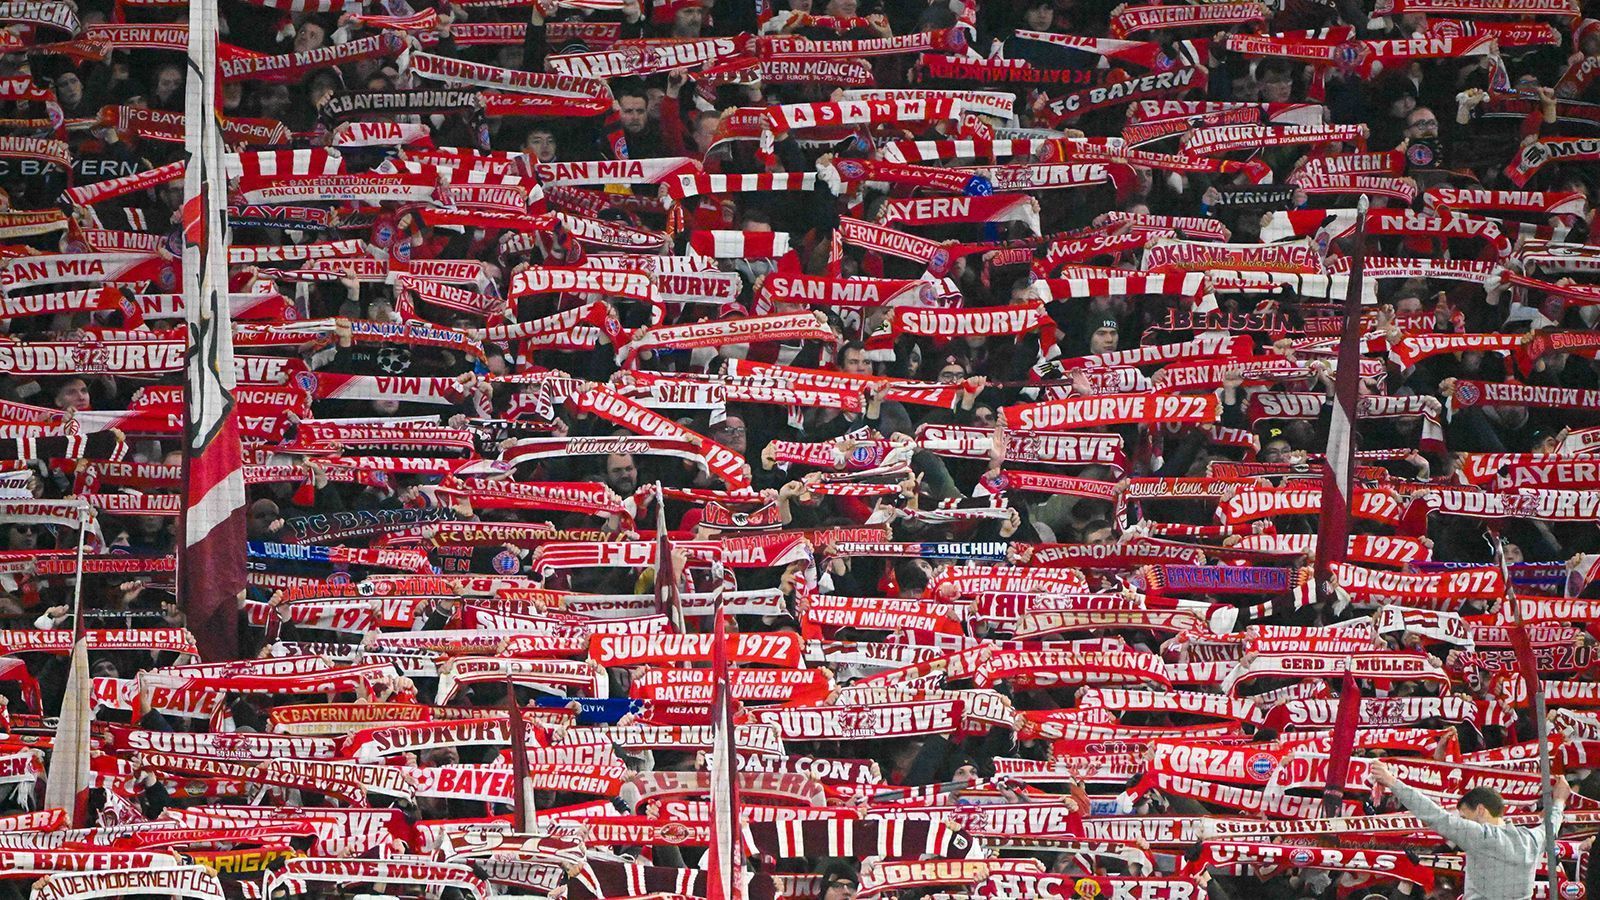 <strong>Platz 1: FC Bayern München</strong><br>
                Der FC Bayern München wächst und wächst. Nachdem in den vergangenen Jahren die Marke von 300.000 Mitgliedern geknackt wurde, steht der deutsche Rekordmeister mittlerweile bei 316.000 Mitgliedern. Ganz knapp mehr als die Boca Juniors.